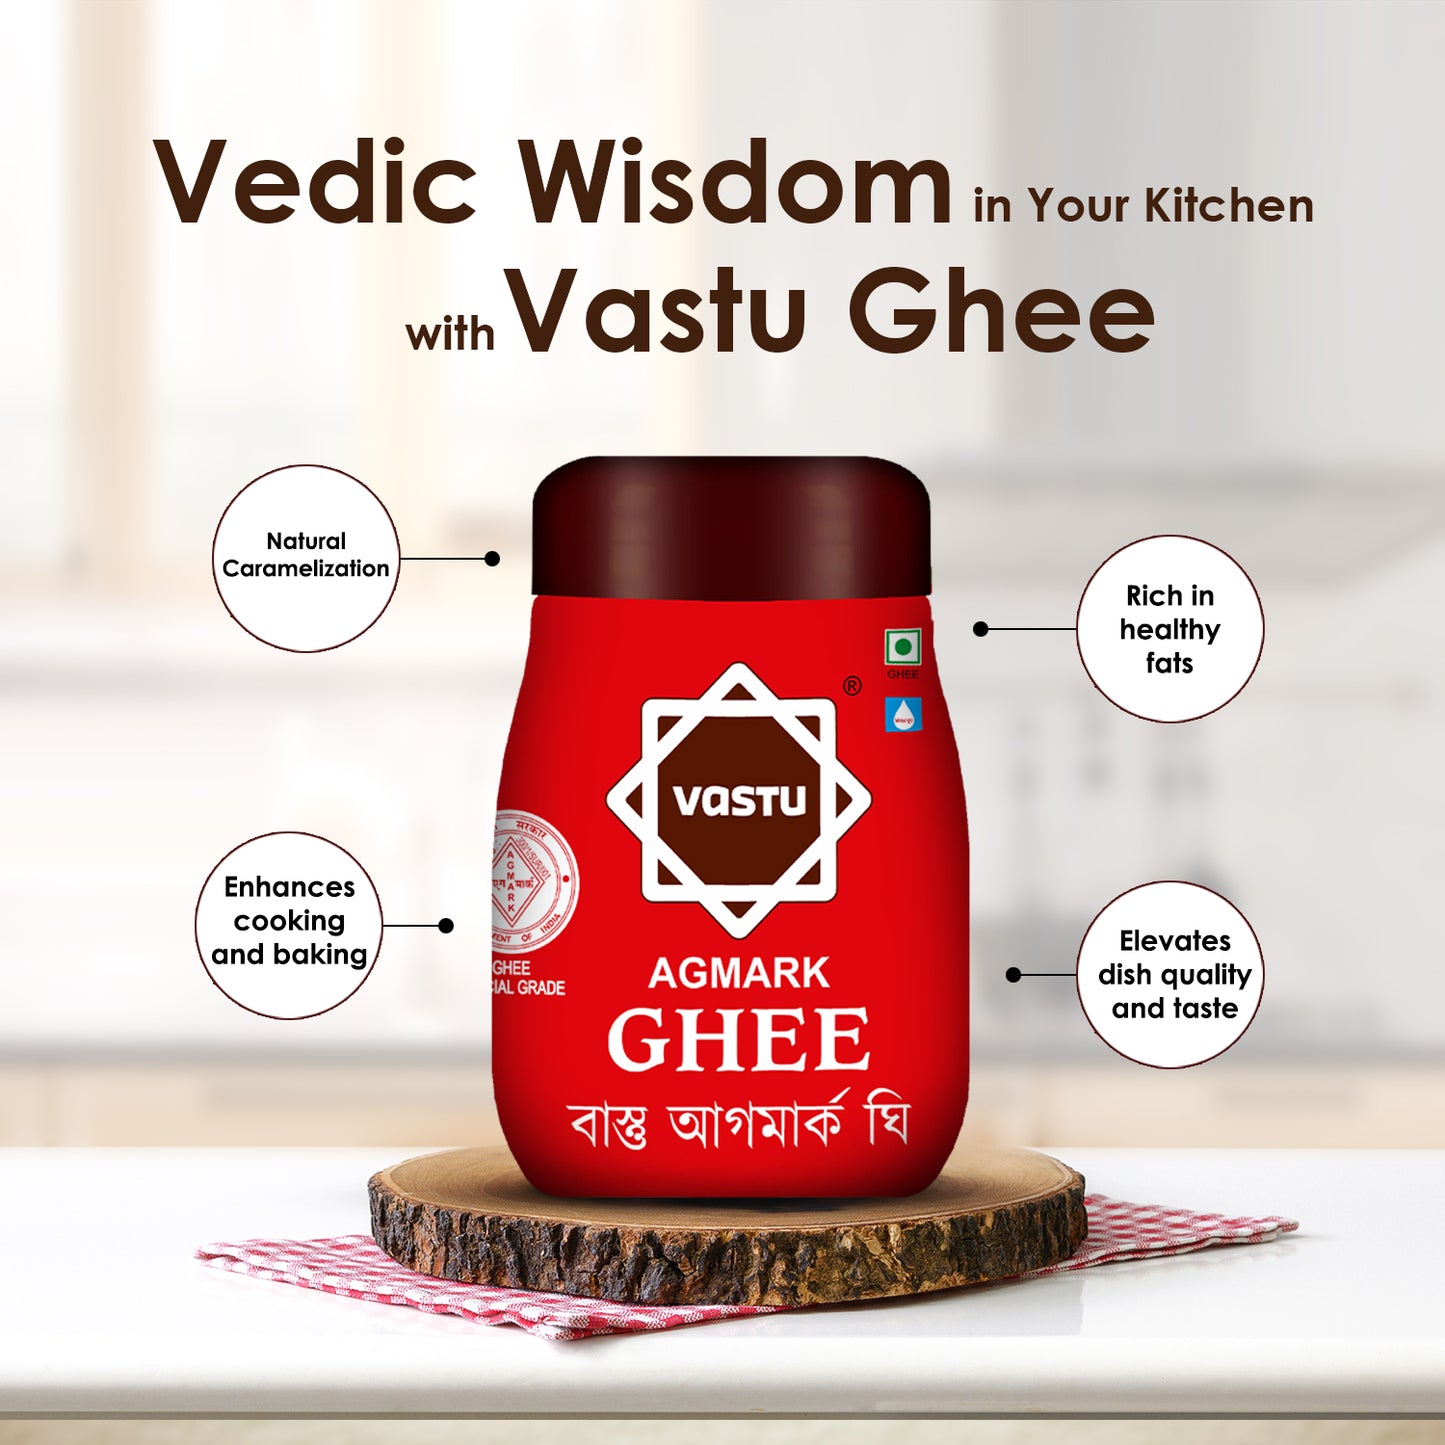 
                  
                    Vastu Brown Ghee Jar (Pack of 1)
                  
                